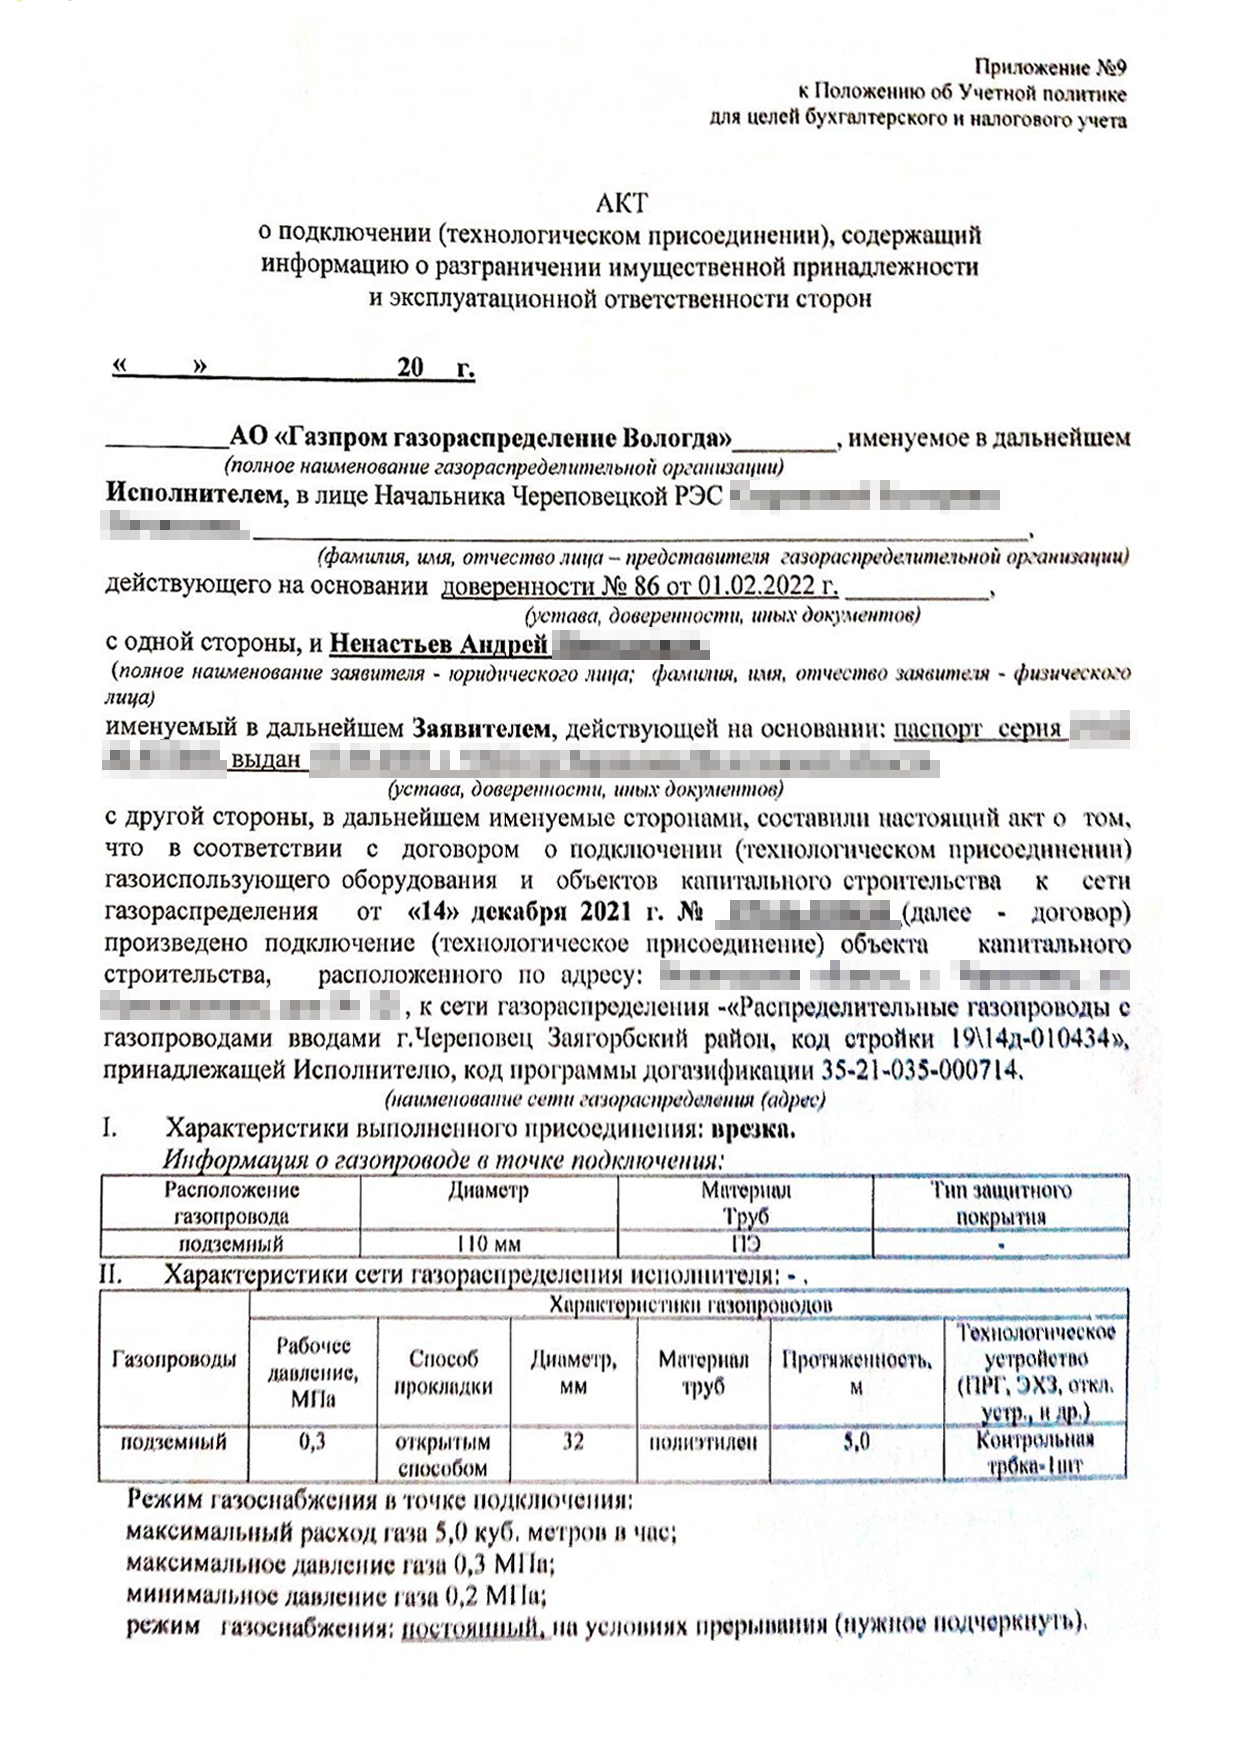 Такой акт я подписал с представителем «Газпрома» после подключения